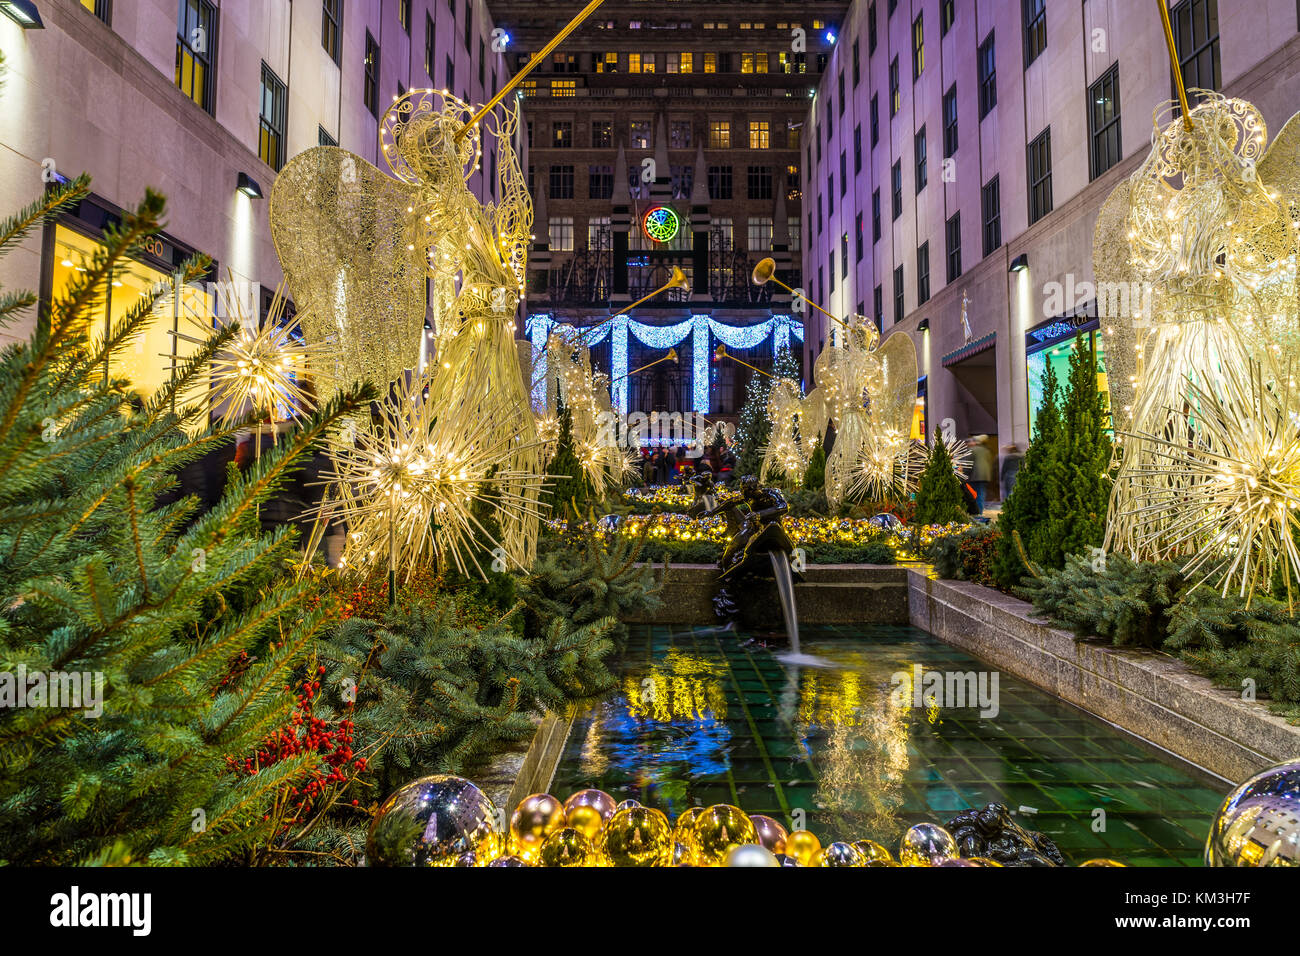 New York, NY usa - 26 nov, 2017. temporada navideña en la ciudad de Nueva York, el Rockefeller Center Foto de stock